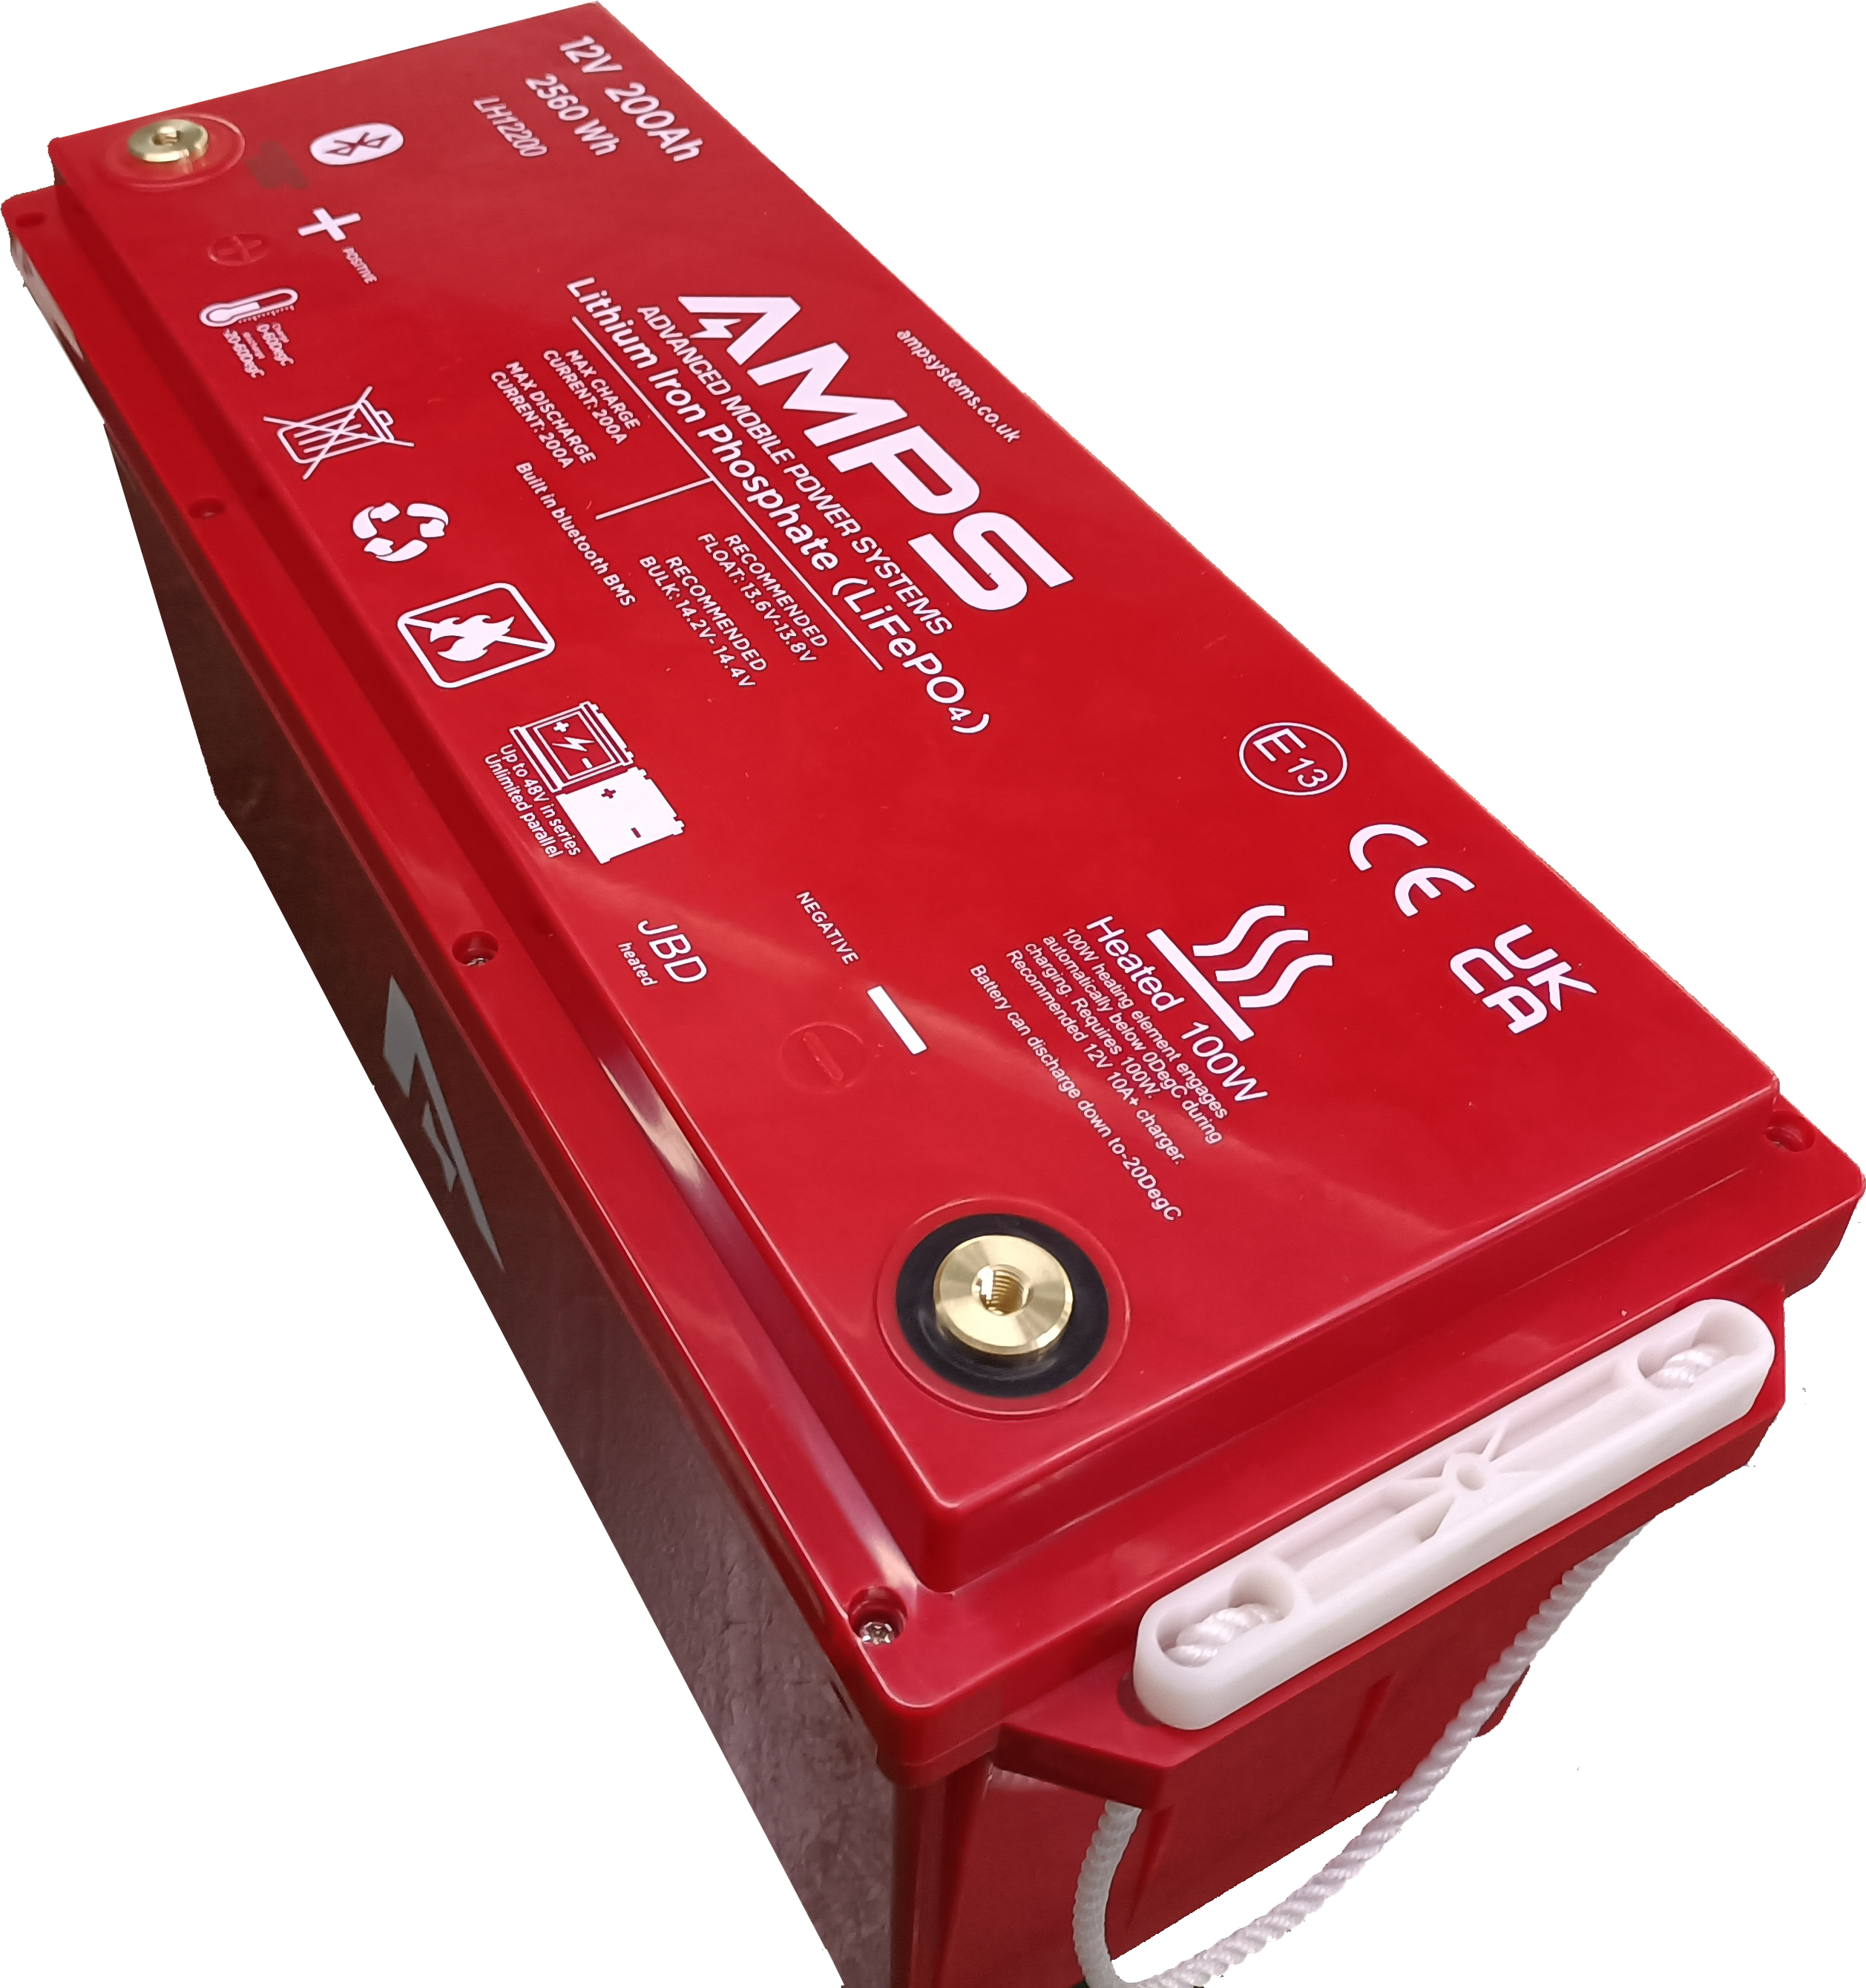 Battery Voltage Regulator 200 Amp for 12V DC Systems Including